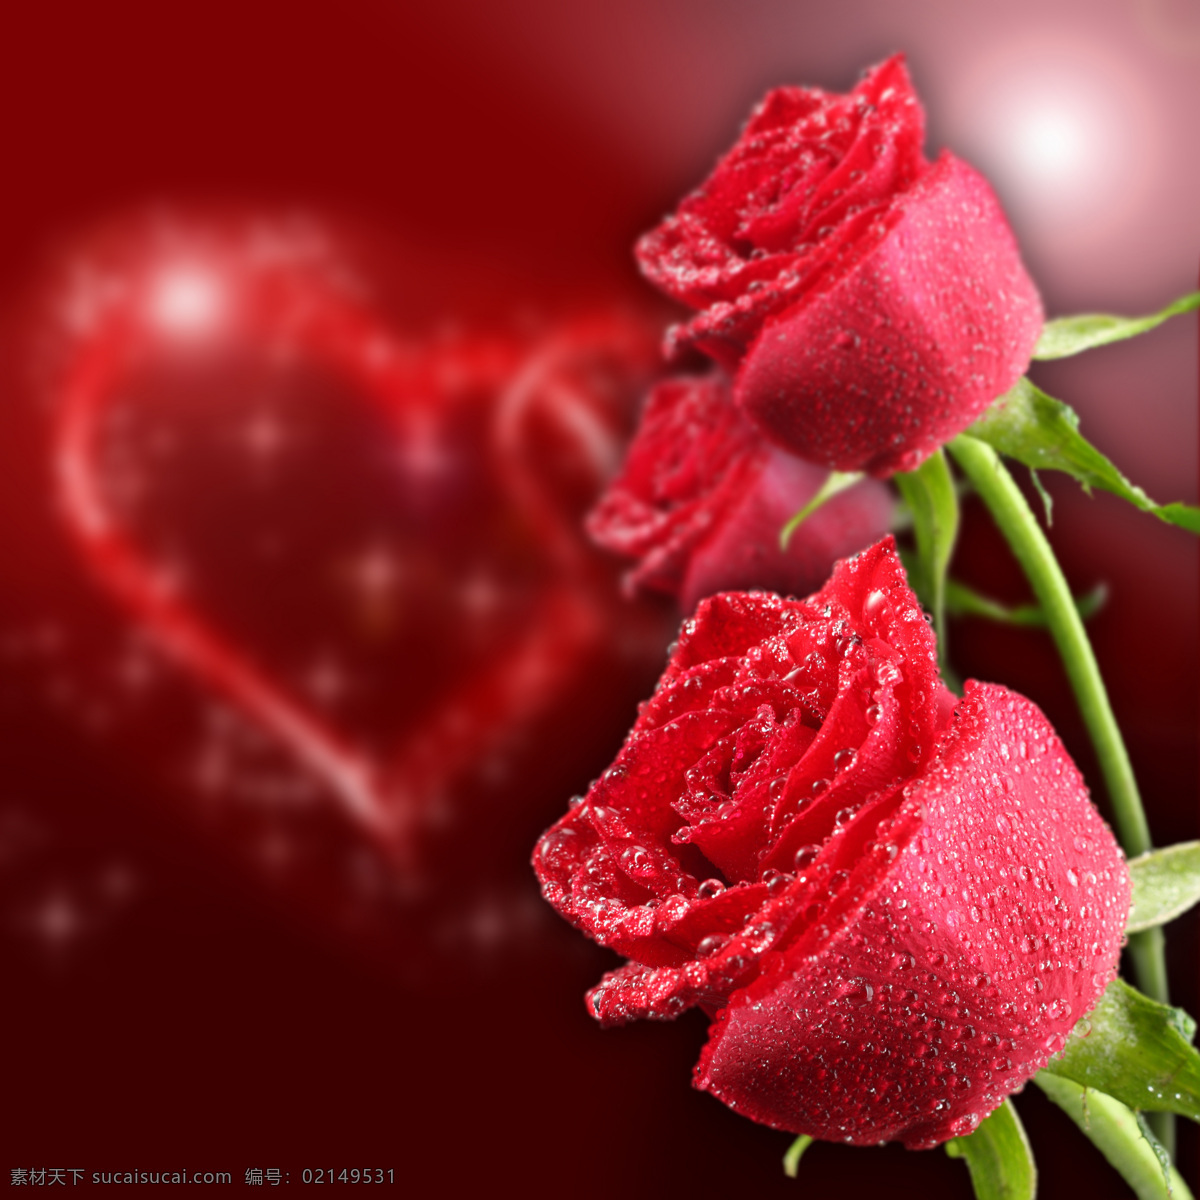 玫瑰 玫瑰花 鲜花 红玫瑰 花朵 爱心 心形 心型 桃心 情人节 情人节玫瑰 节日庆祝 文化艺术